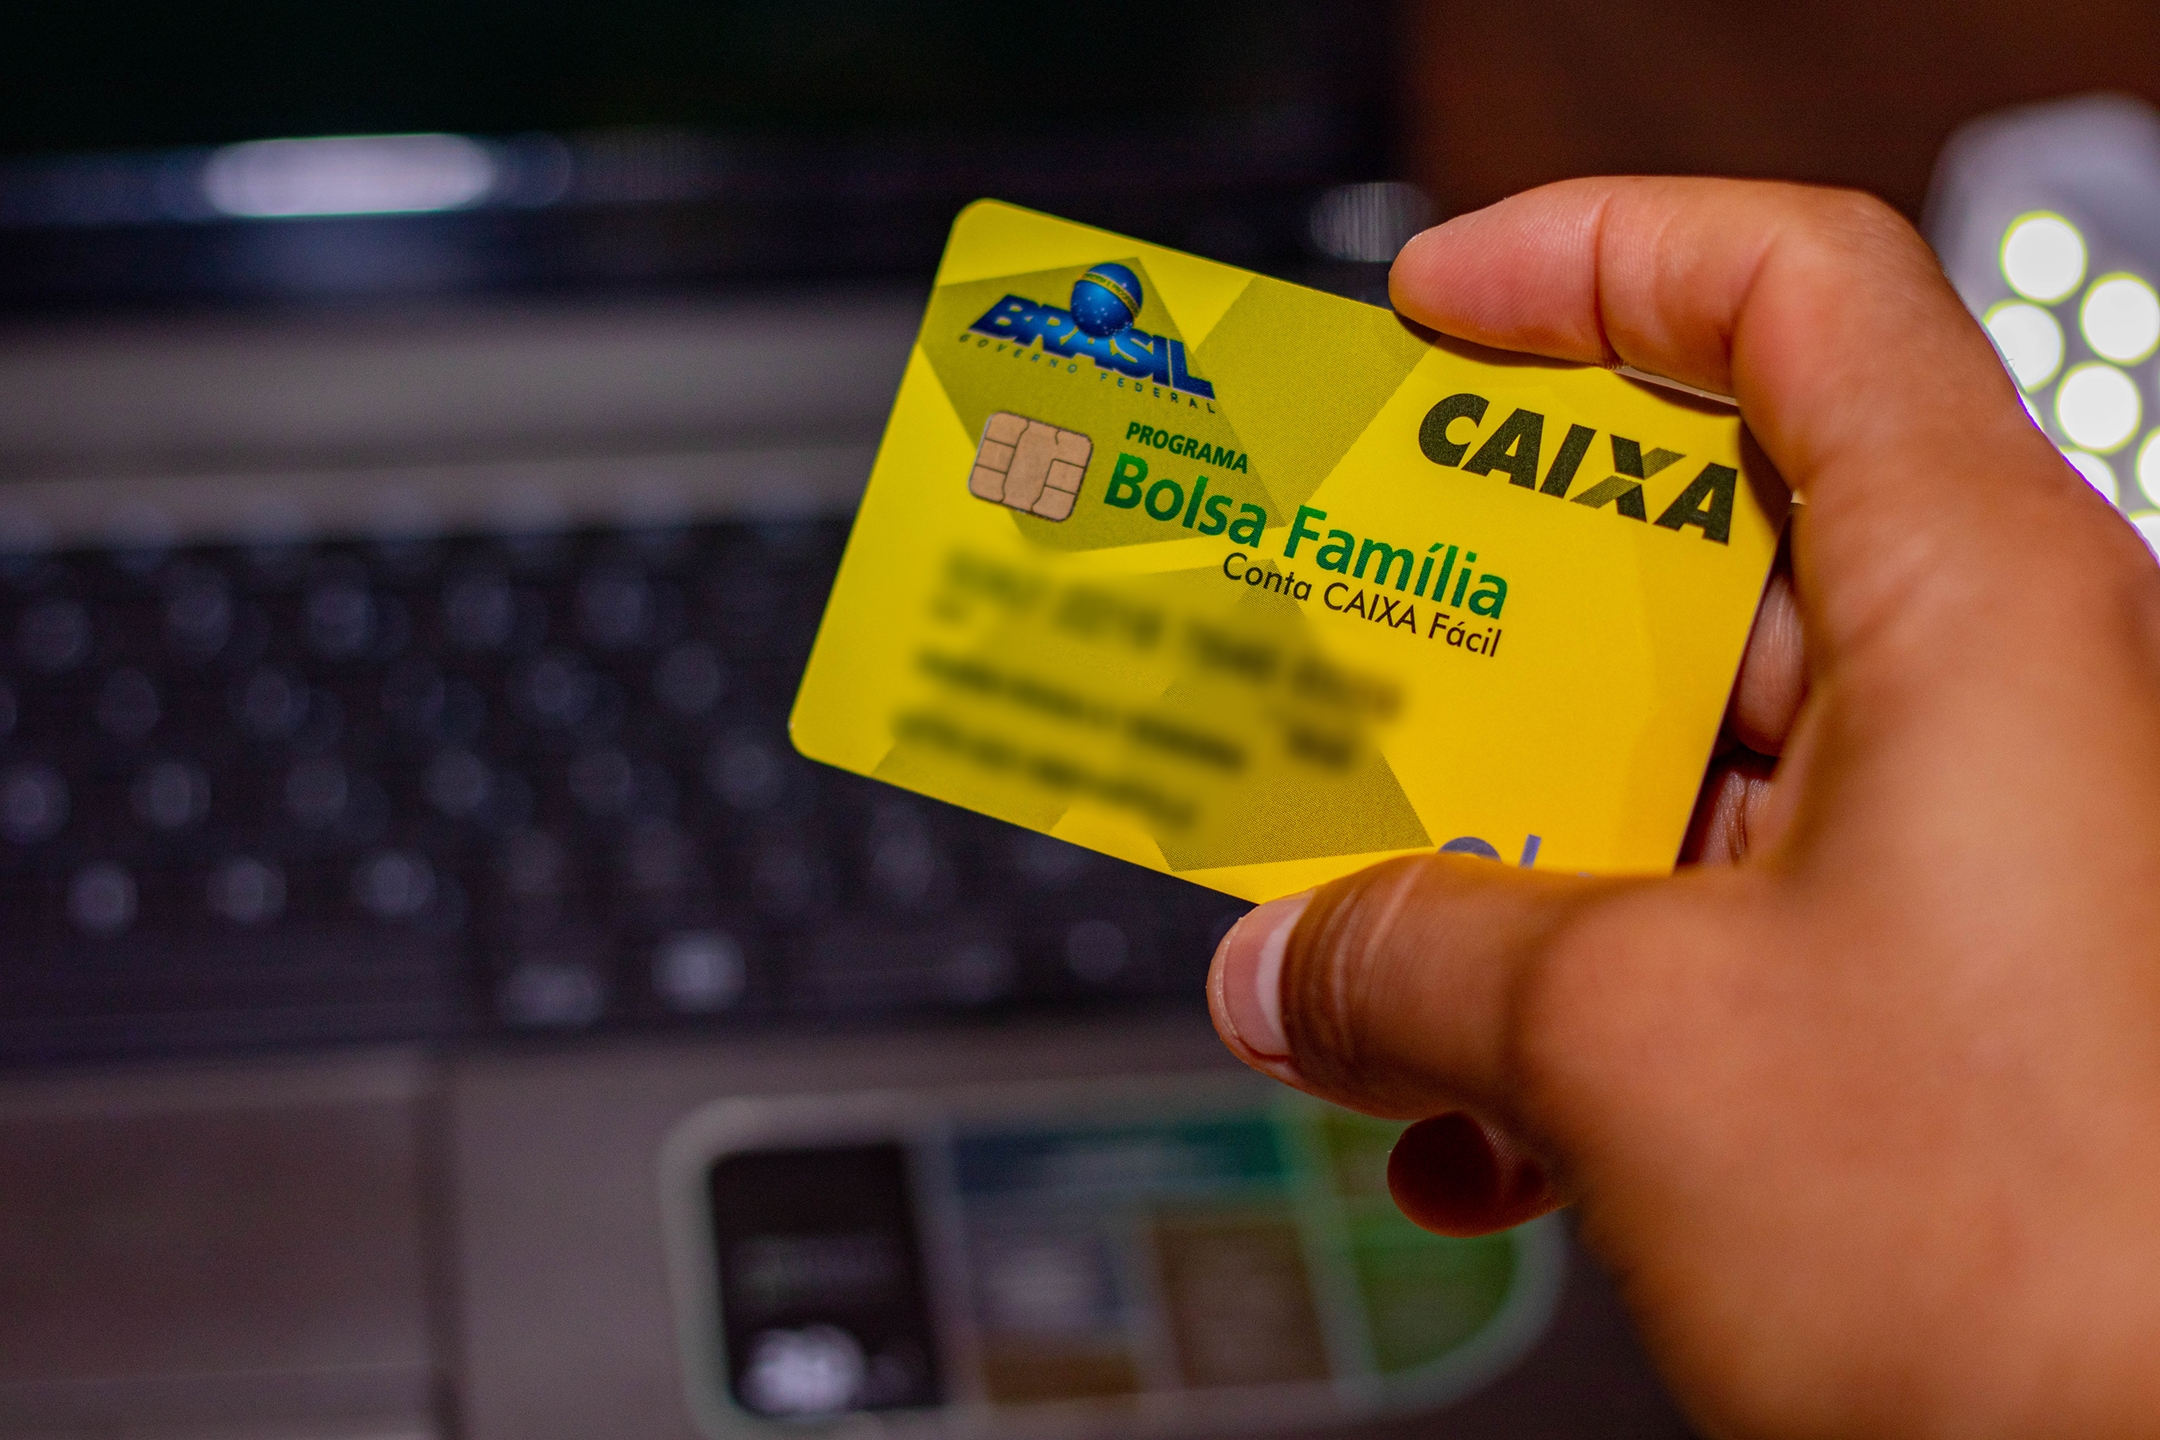  Veprim i shpejtë! Mësoni si të zhbllokoni kartën Bolsa Familia në telefonin tuaj celular